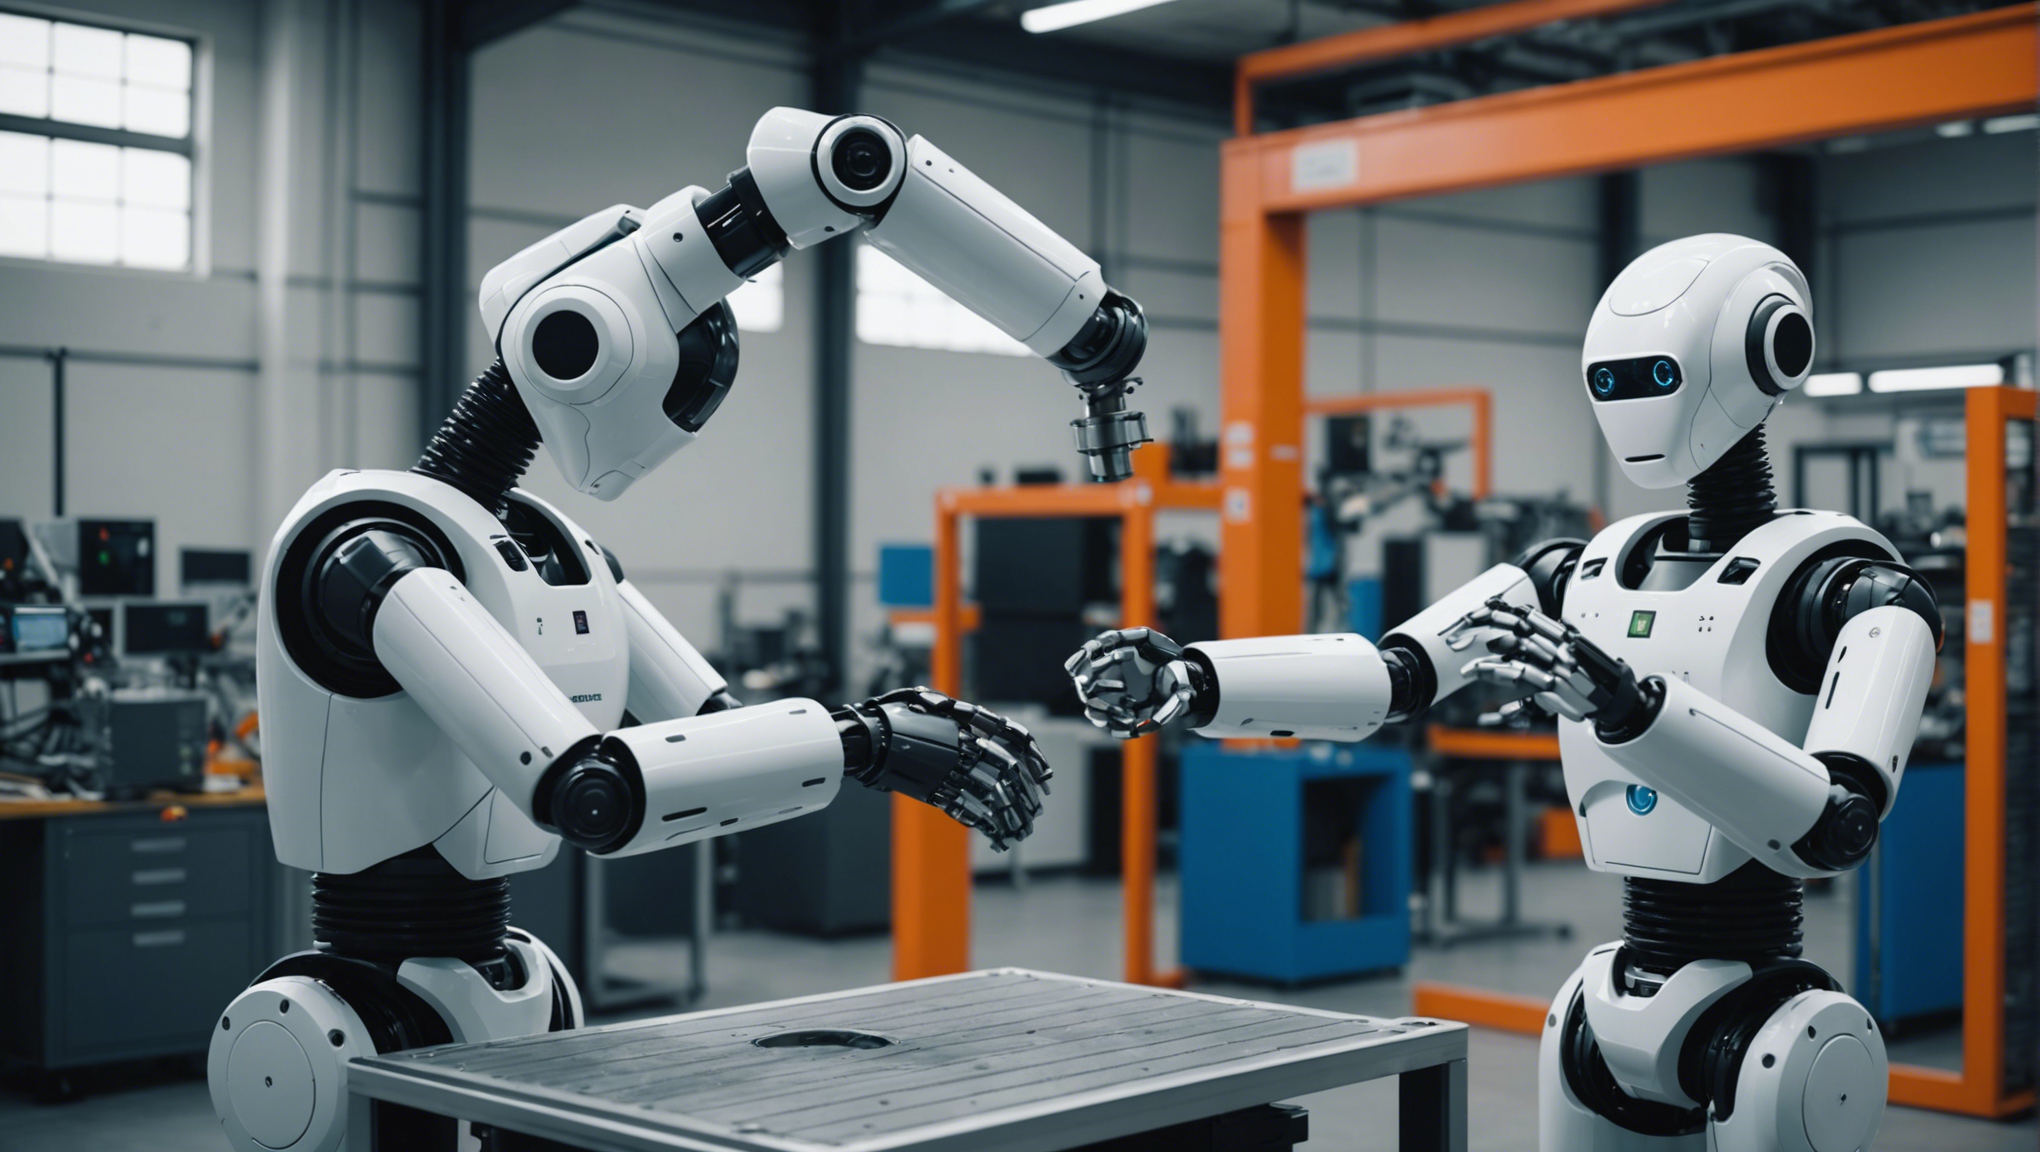 découvrez l'intégration des robots collaboratifs dans l'industrie et la révolution en marche. comment l'industrie se transforme avec ces nouvelles technologies innovantes.